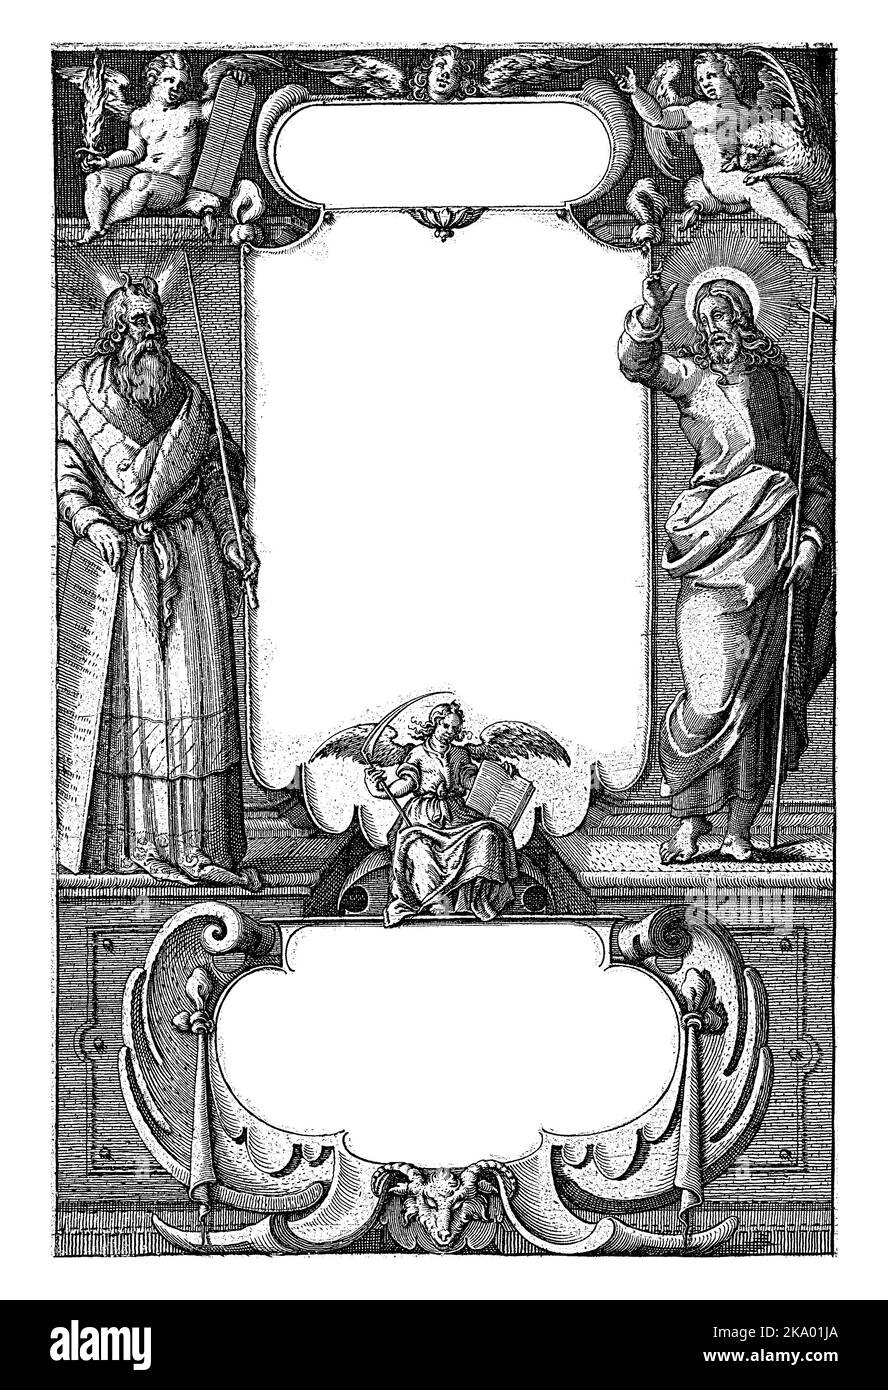 Moïse et Christ bordent le vélin sur lequel le titre de l'œuvre est écrit. Au-dessus de Moïse est un puto avec les tablettes de la loi et une épée flamboyante, un Banque D'Images